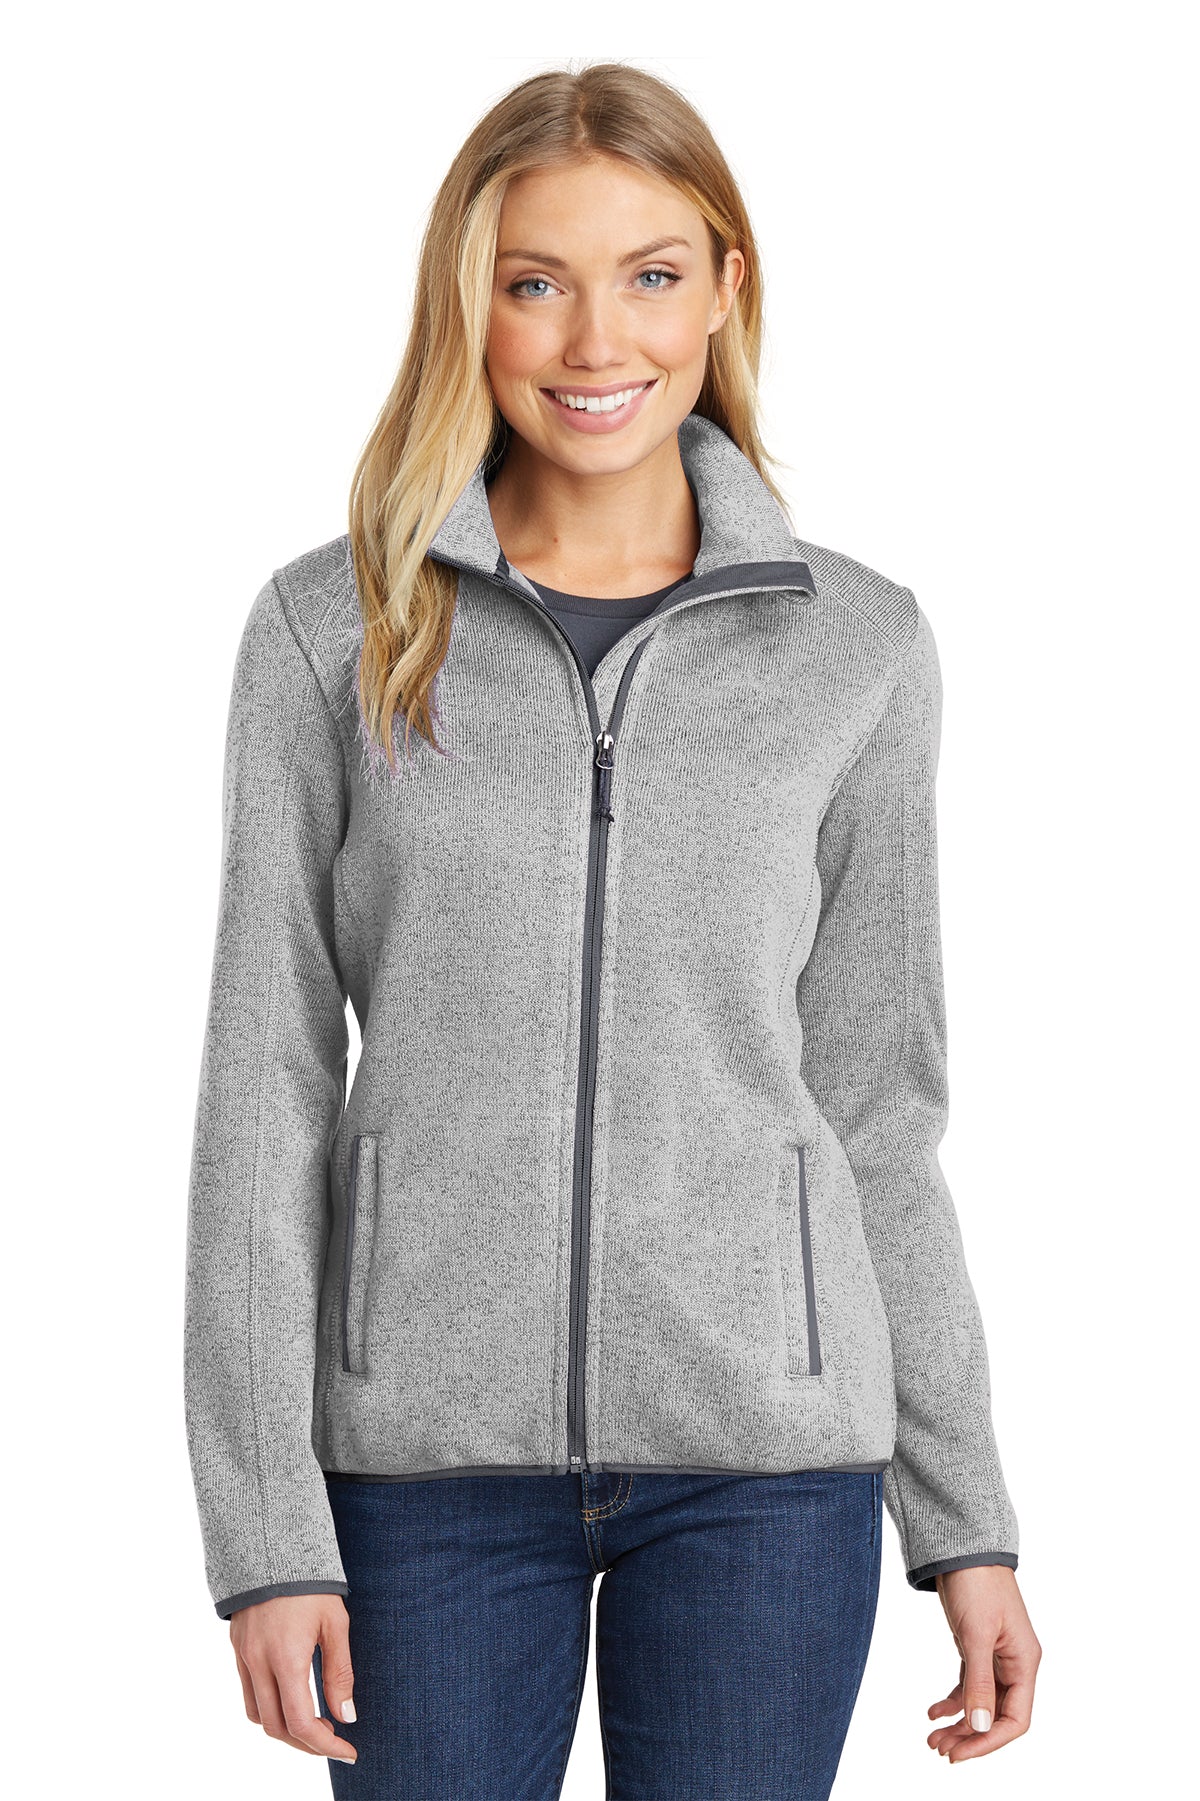 PA L232 Women's Sweater Fleece Jacket Grey